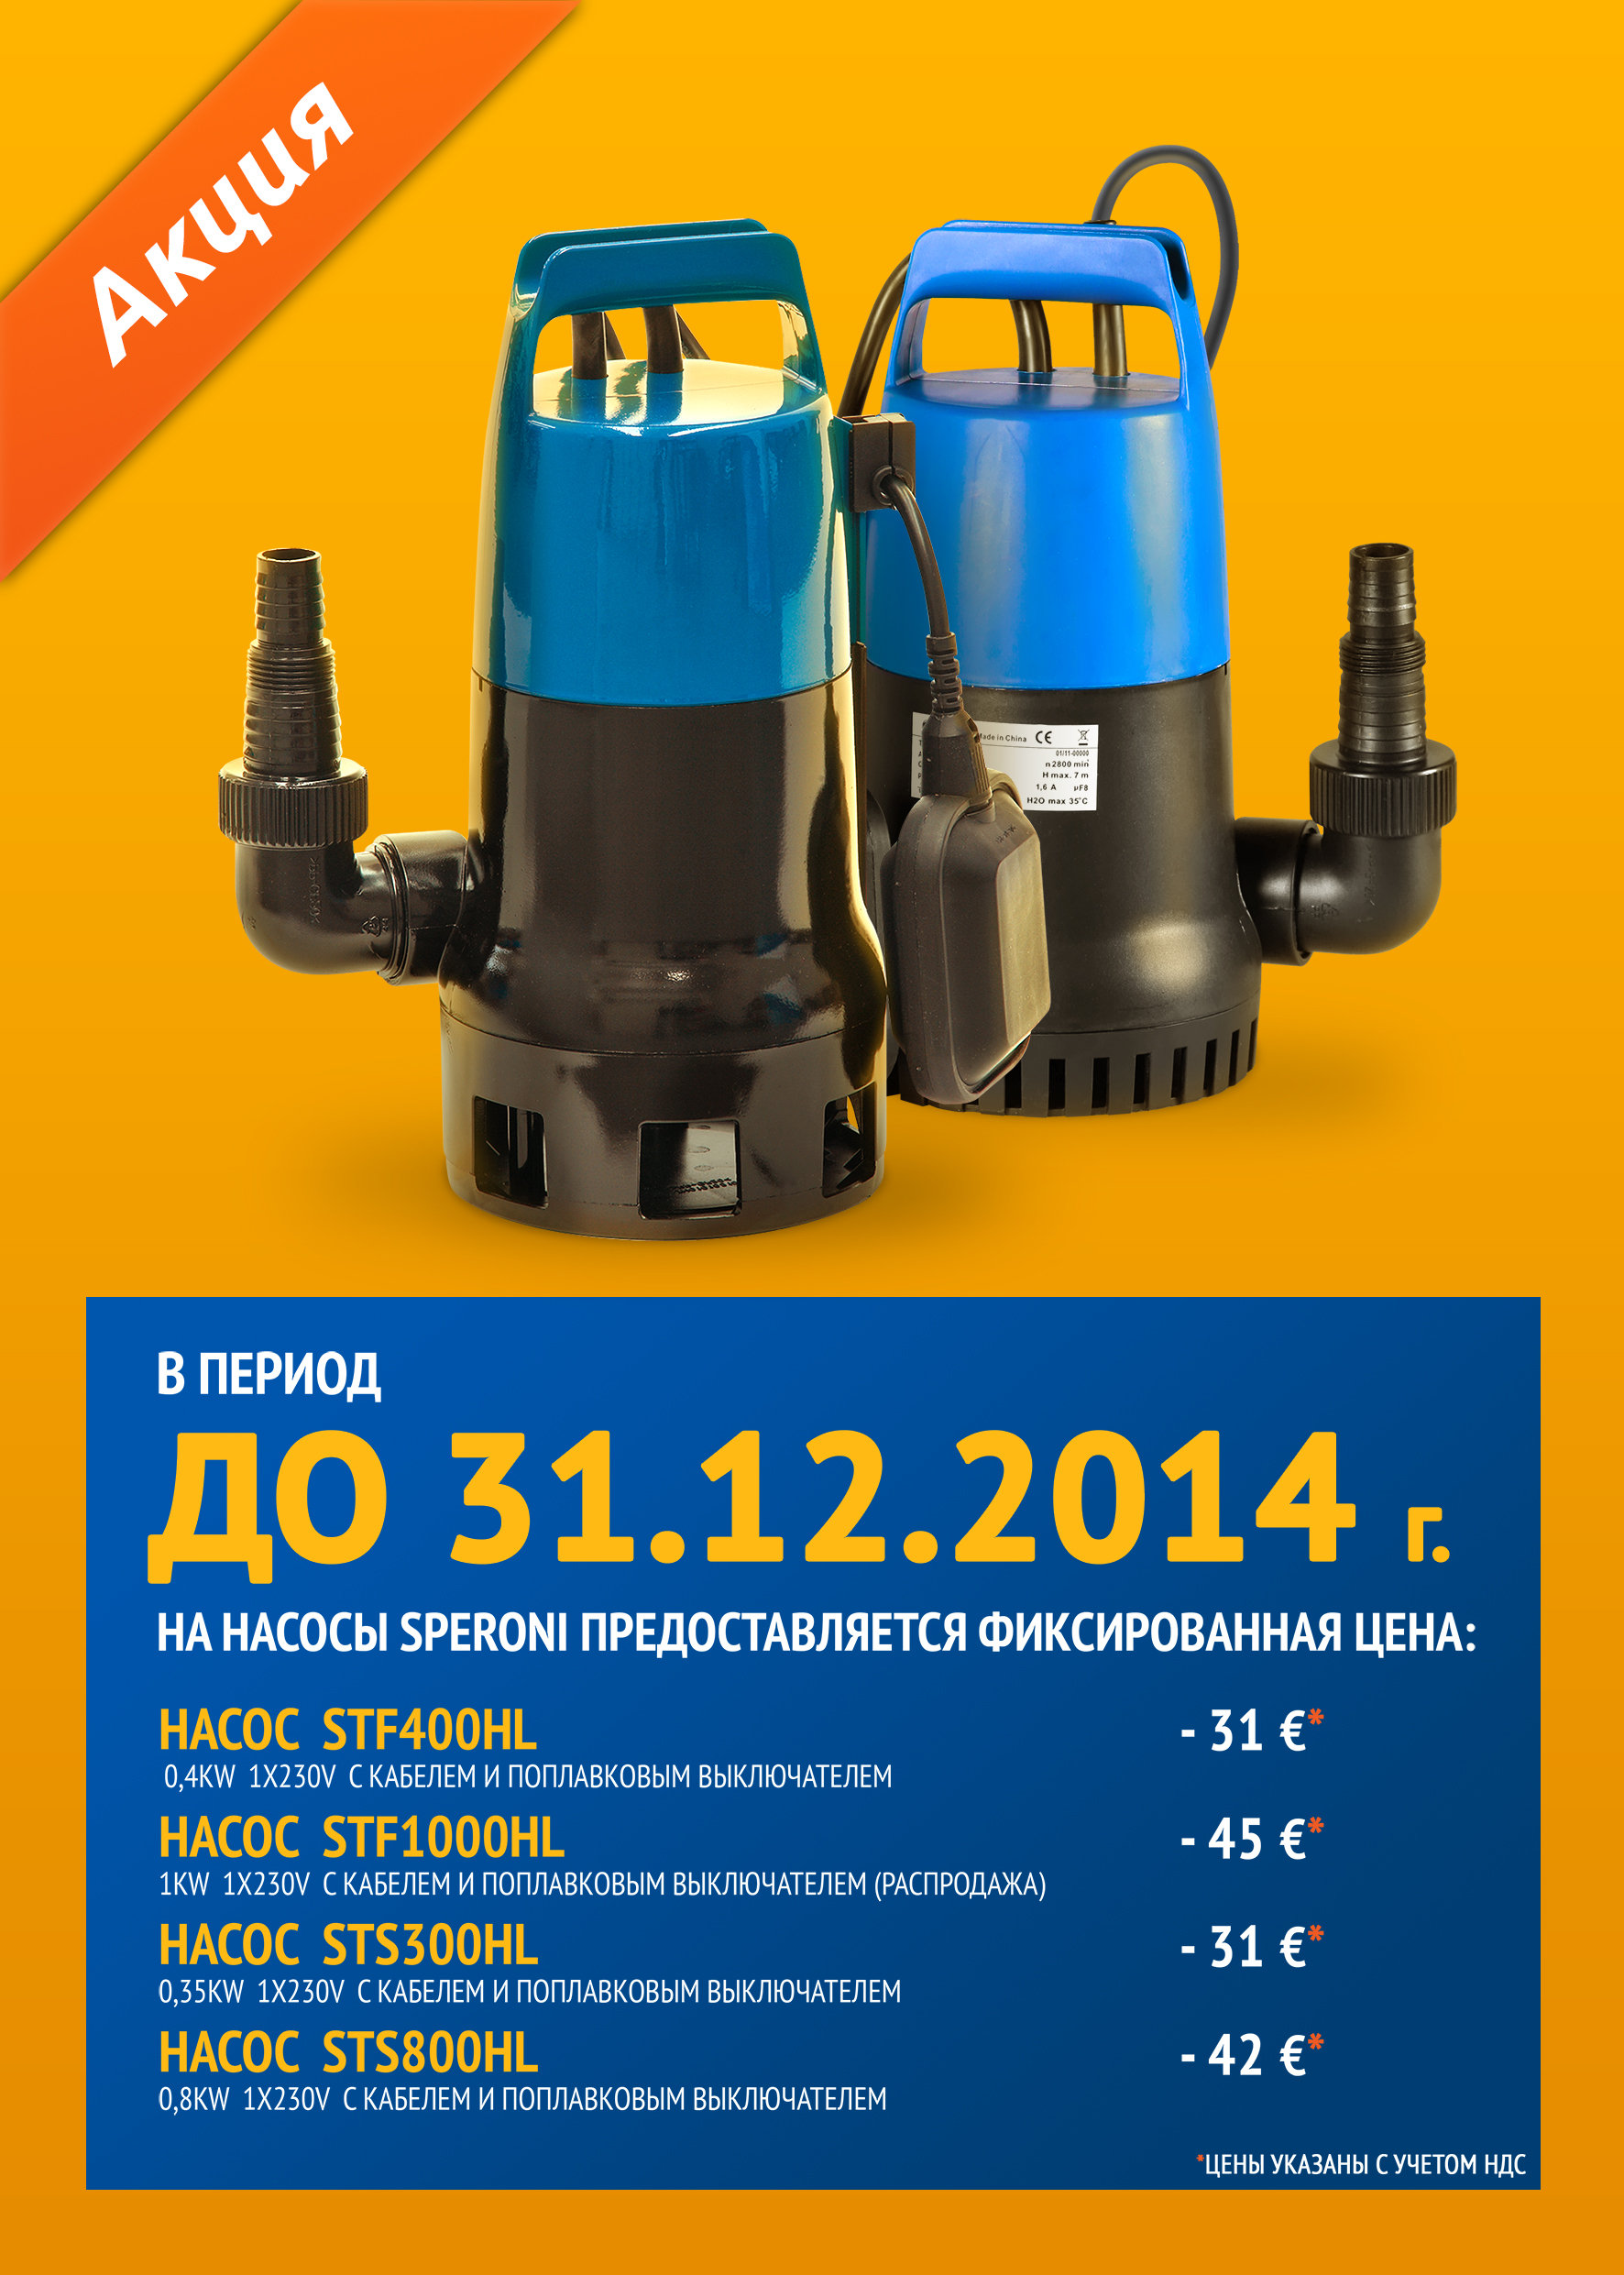 В период до 31.12.2014 на насосы Speroni  предоставляется фиксированная цена 